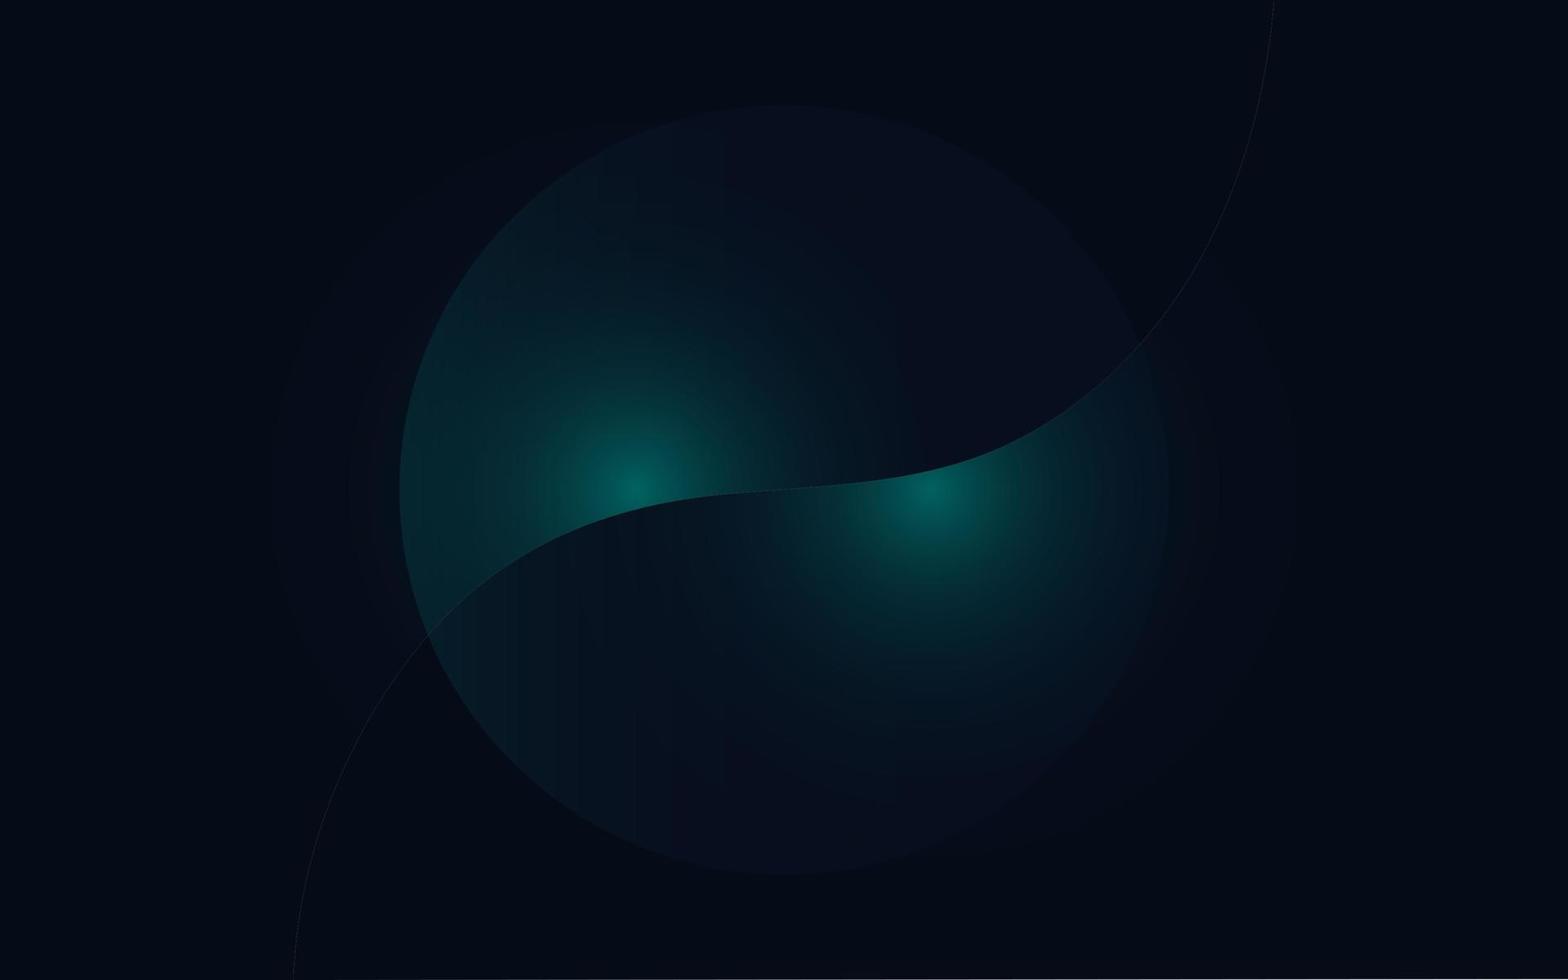 minimalistische diep blauwachtig groen premie abstract achtergrond met luxe meetkundig donker vormen. illustratie vector 10 eps.